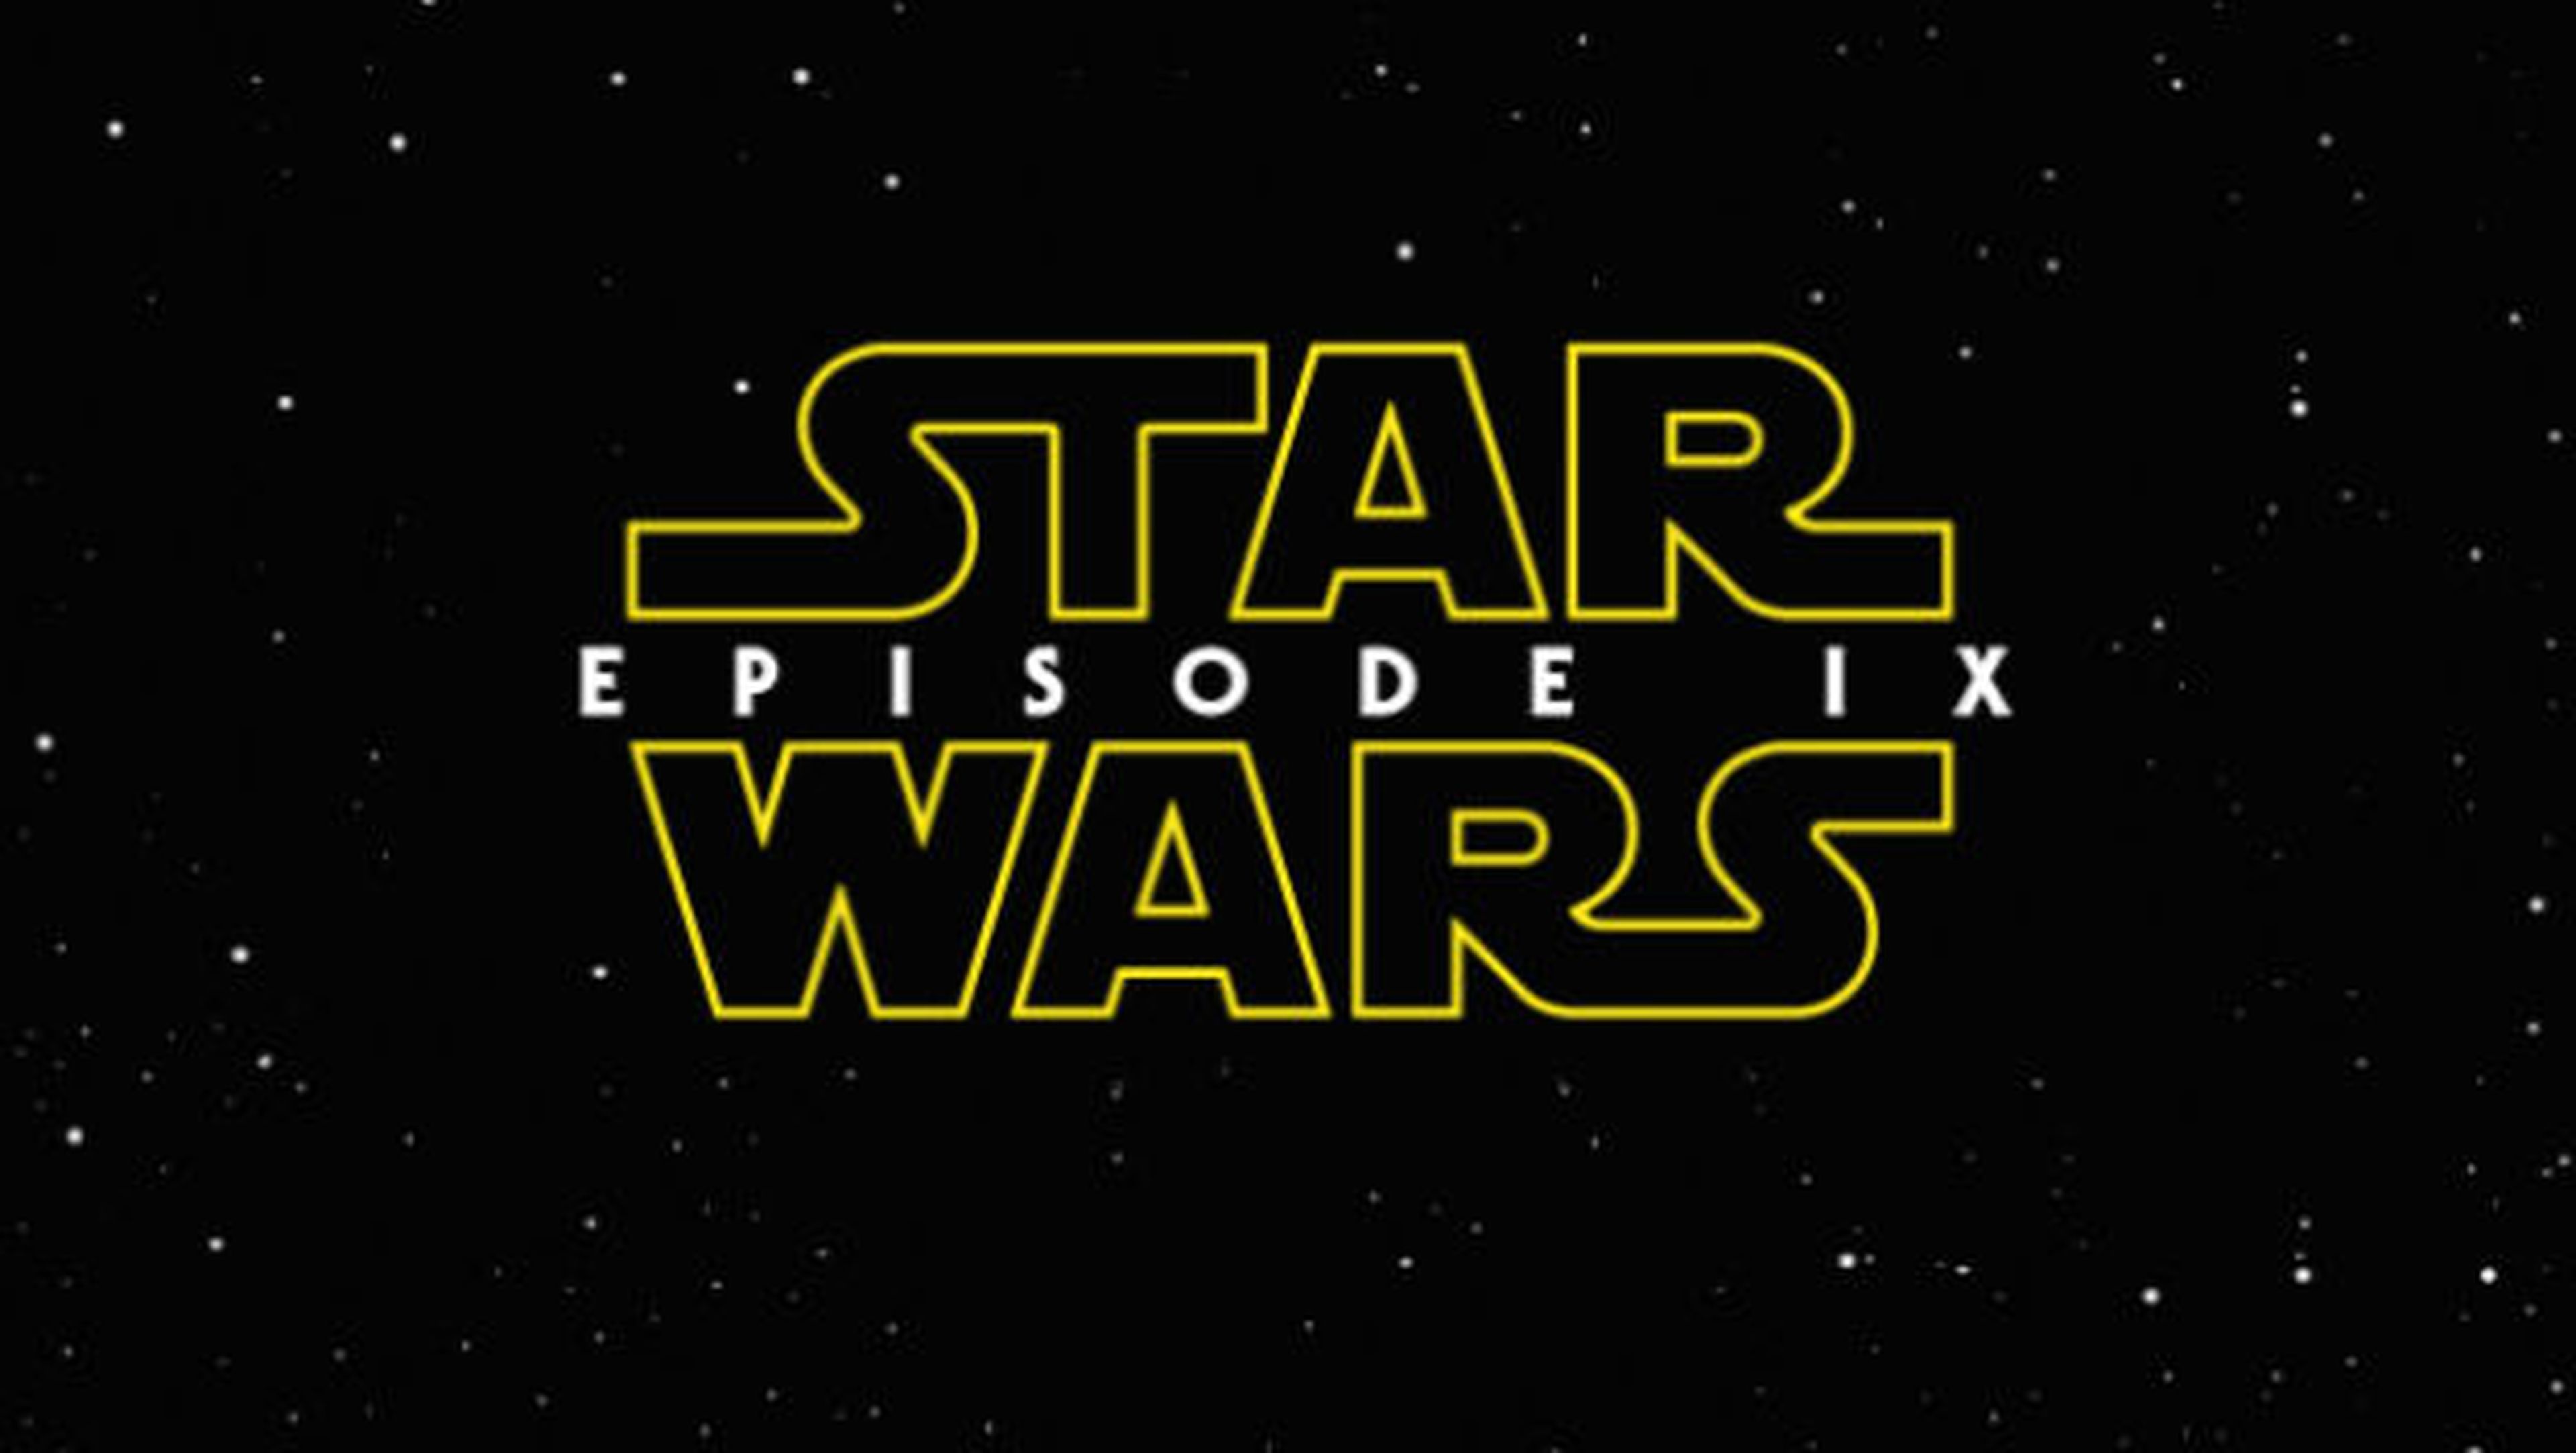 Filtrado el posible nombre de Star Wars Episodio IX.